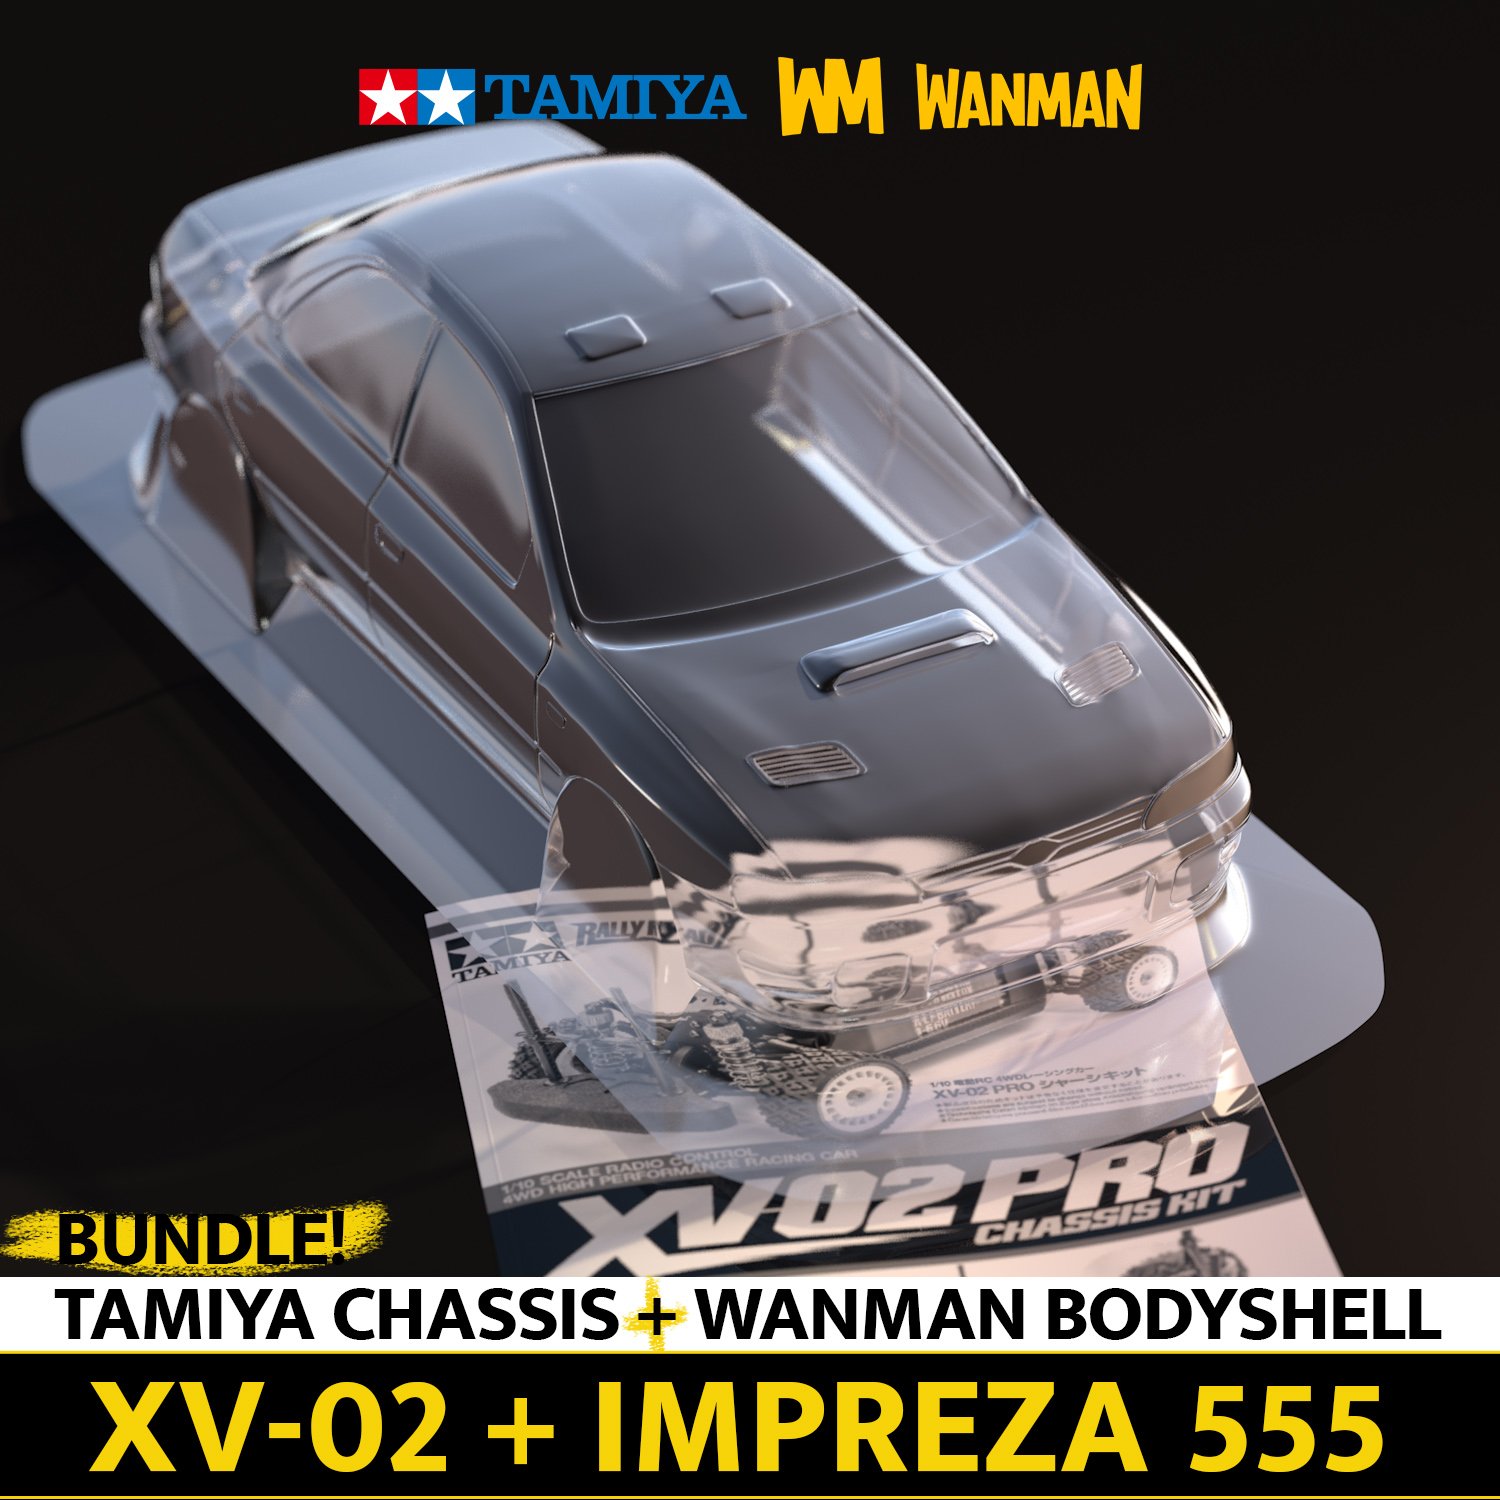 Tamiya XV-02 PRO + Subaru Impreza 555 Bodyshell Bundle